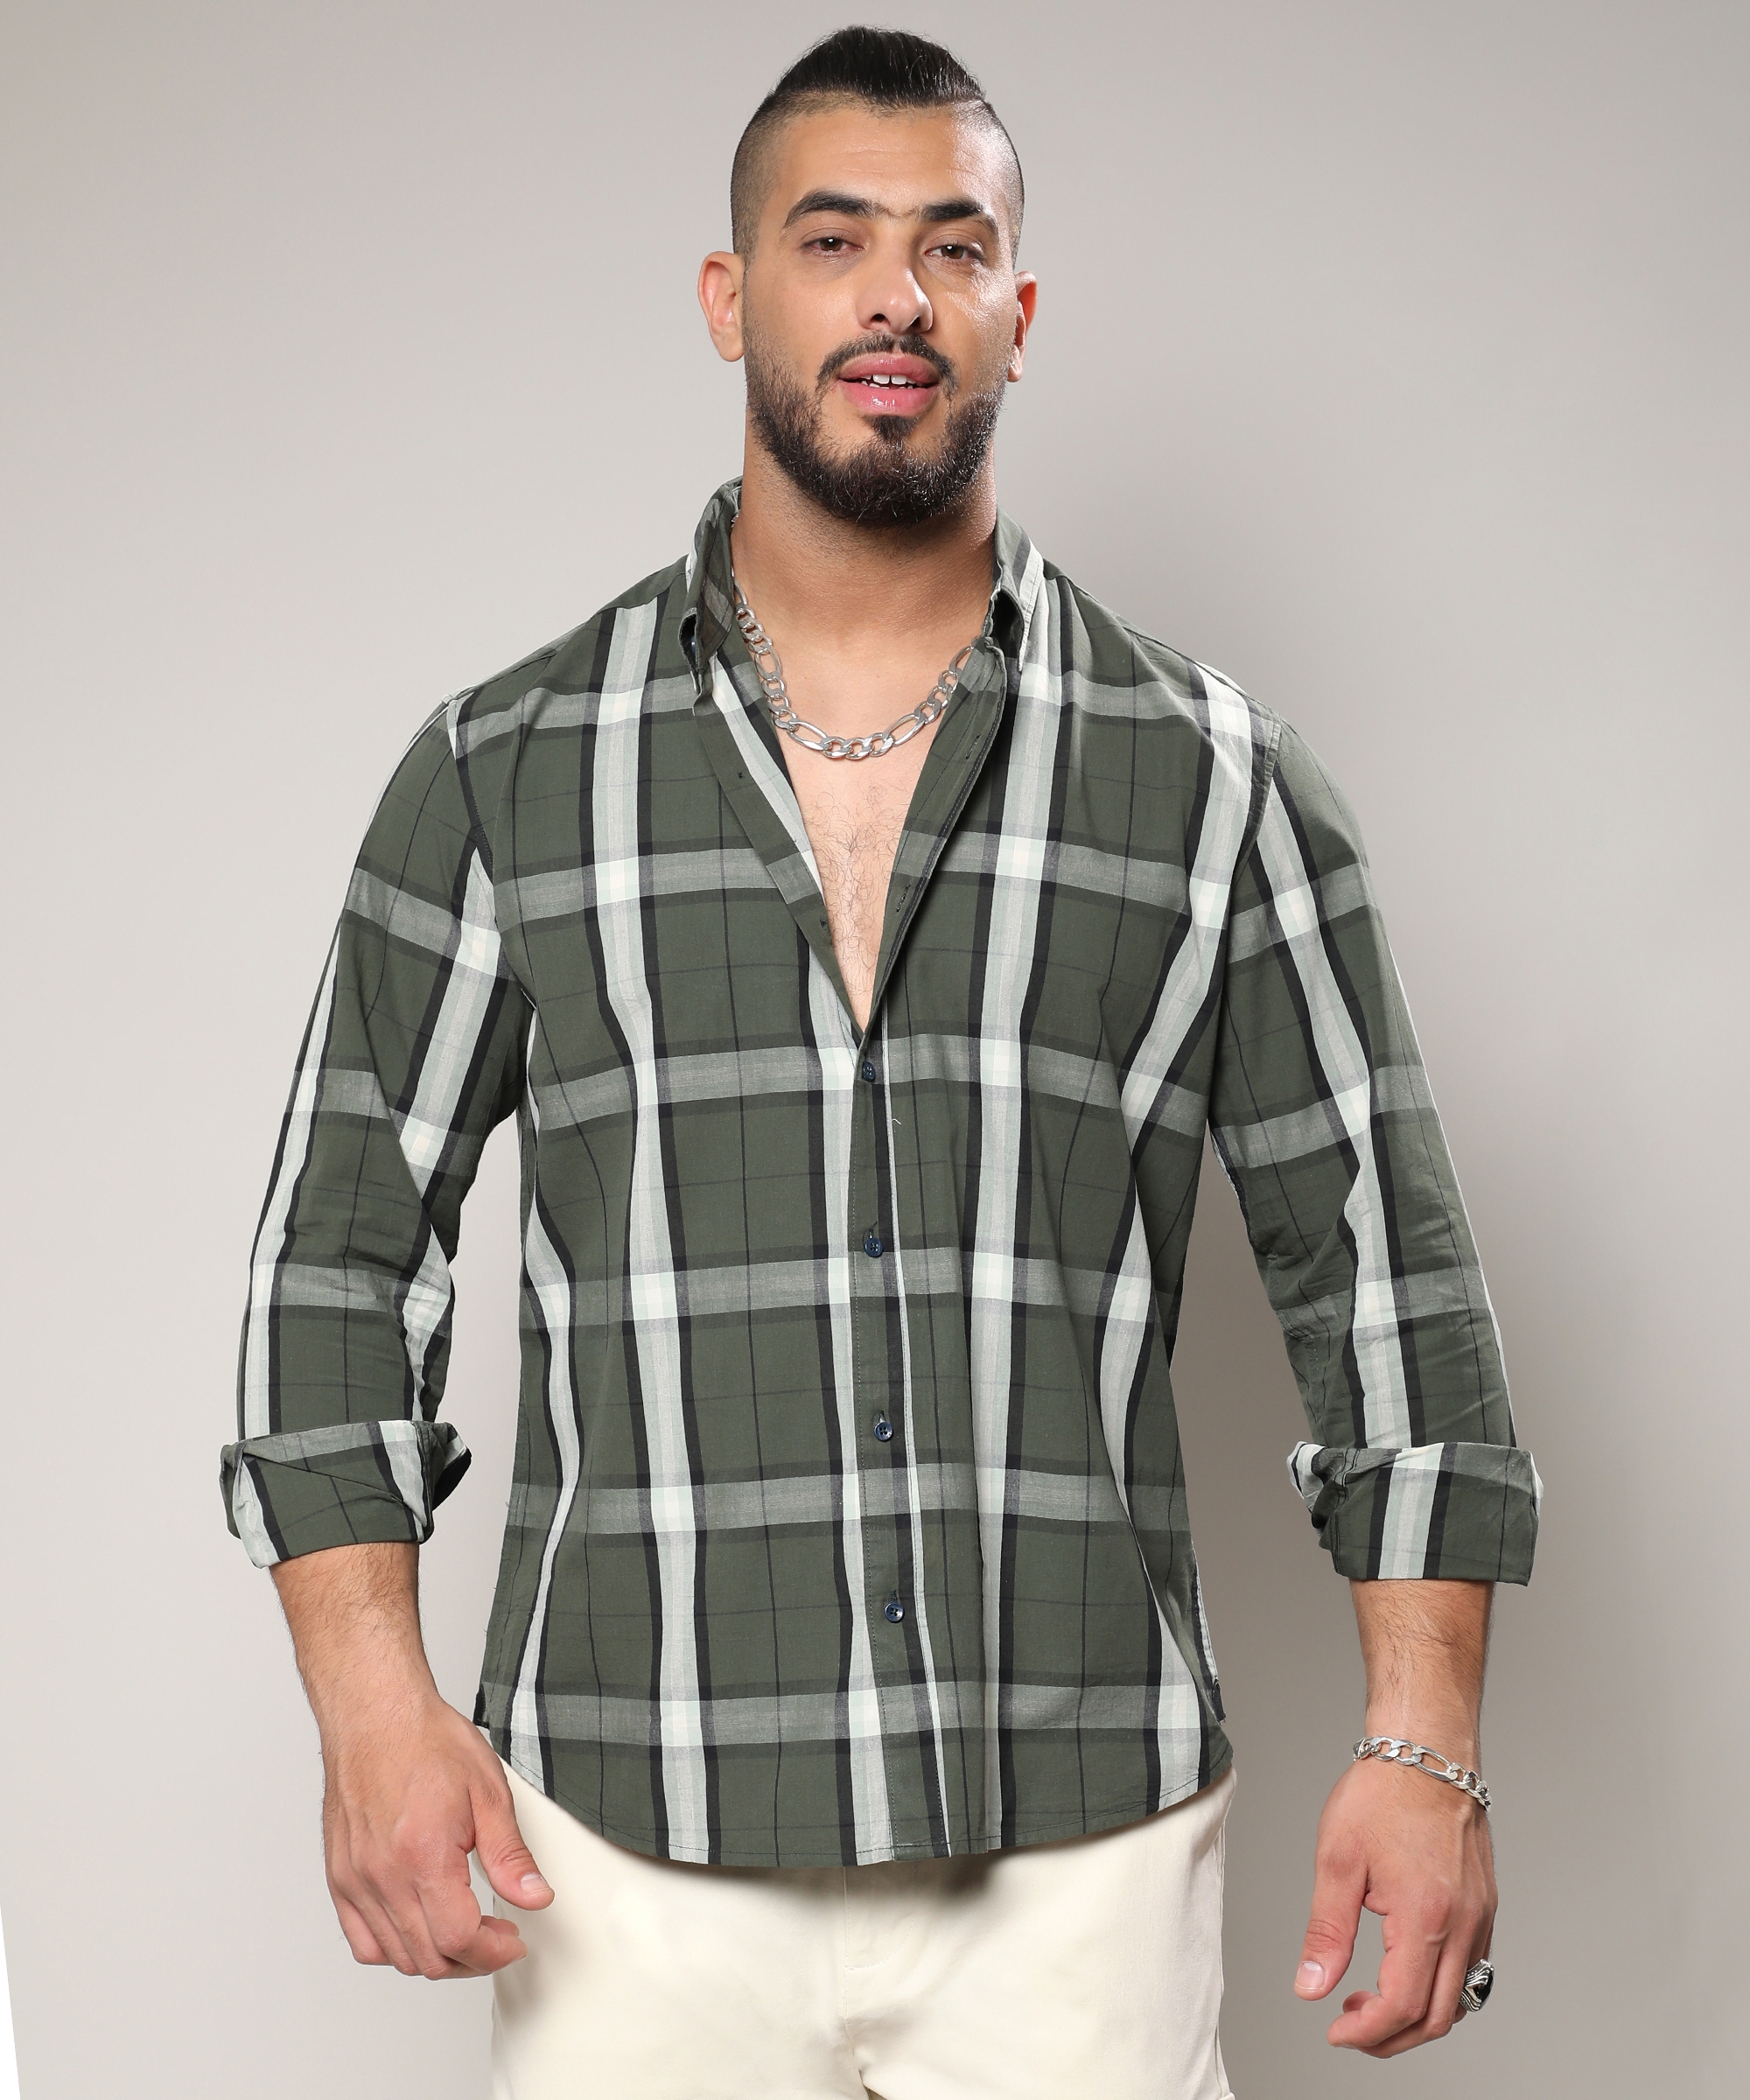 Instafab Plus | Men's Tartan Plaid Dark Green Shirt